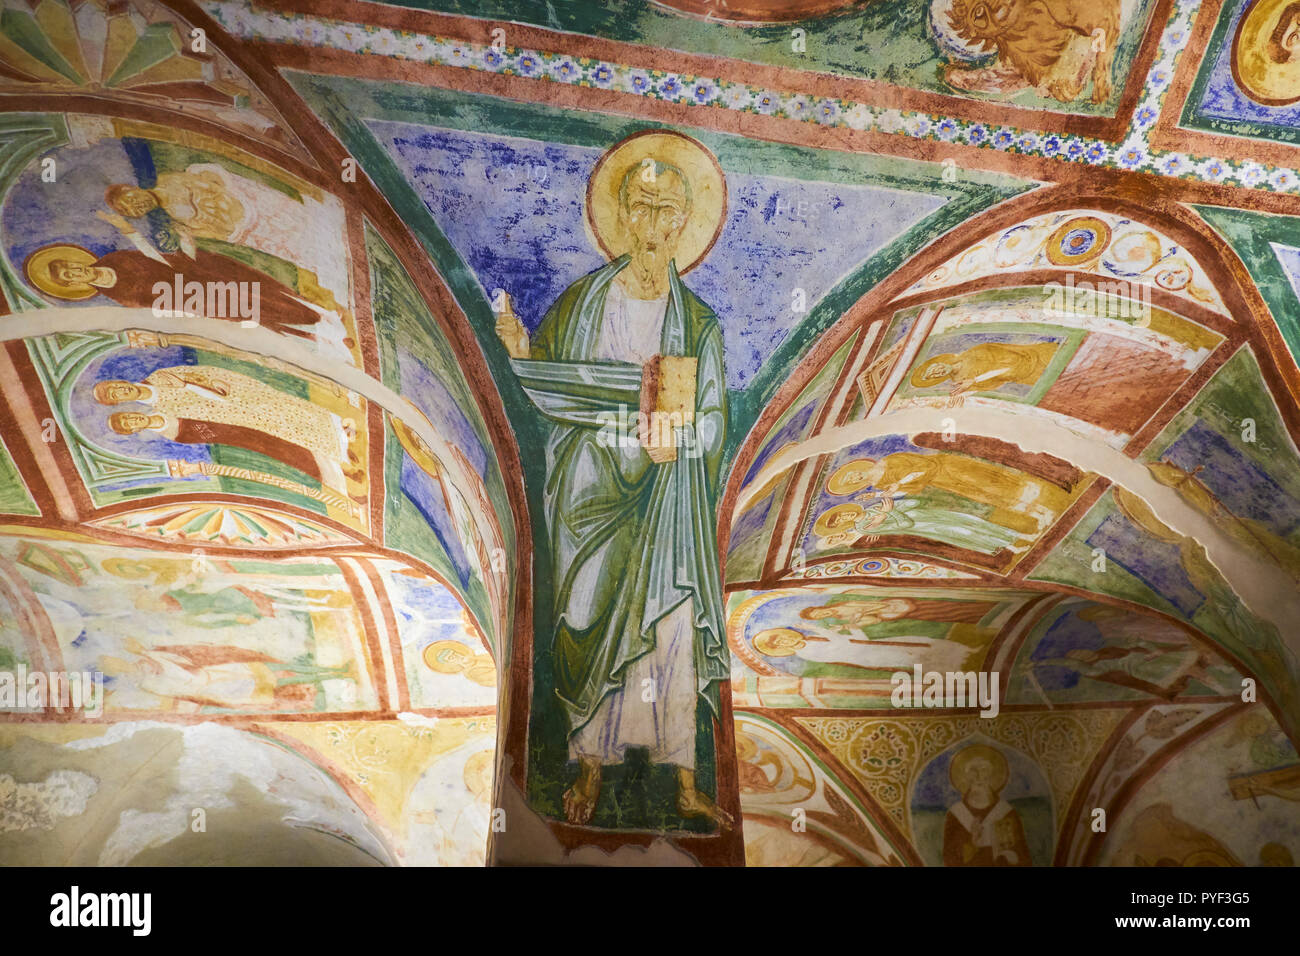 L'Italie, Frioul-vénétie Aquilee, Aquileia, Basilique Patriarcale de Santa Maria Assunta, neuvième siècle Christian fresques, plafond, crypt Banque D'Images